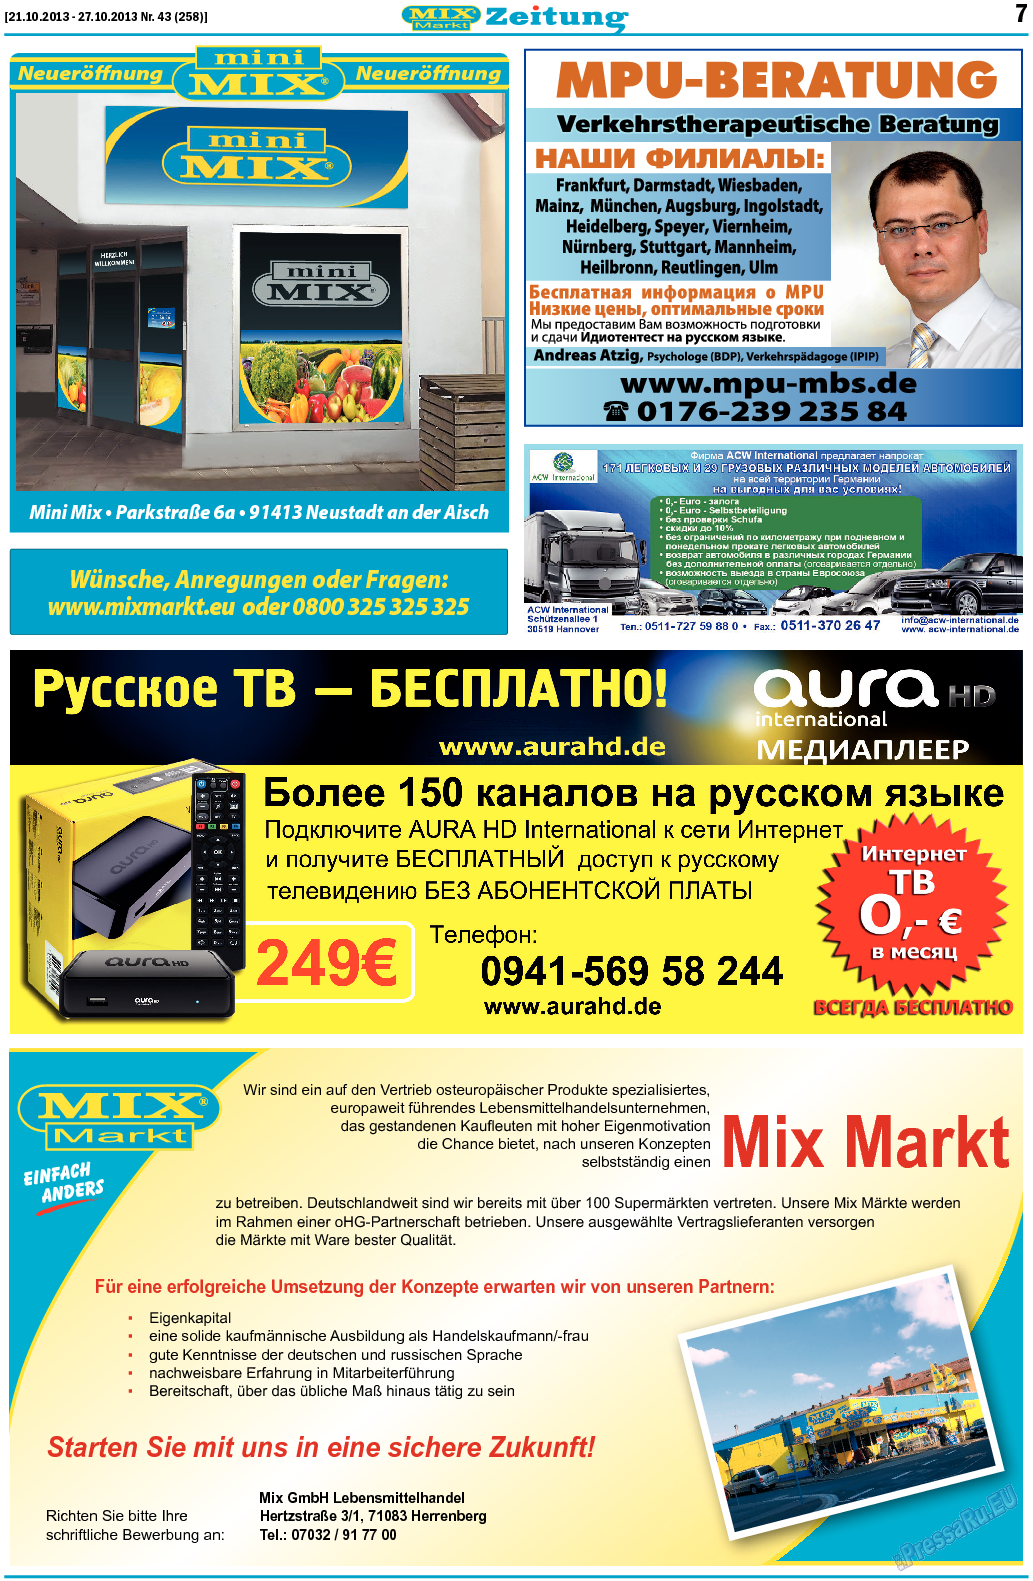 MIX-Markt Zeitung, газета. 2013 №43 стр.7